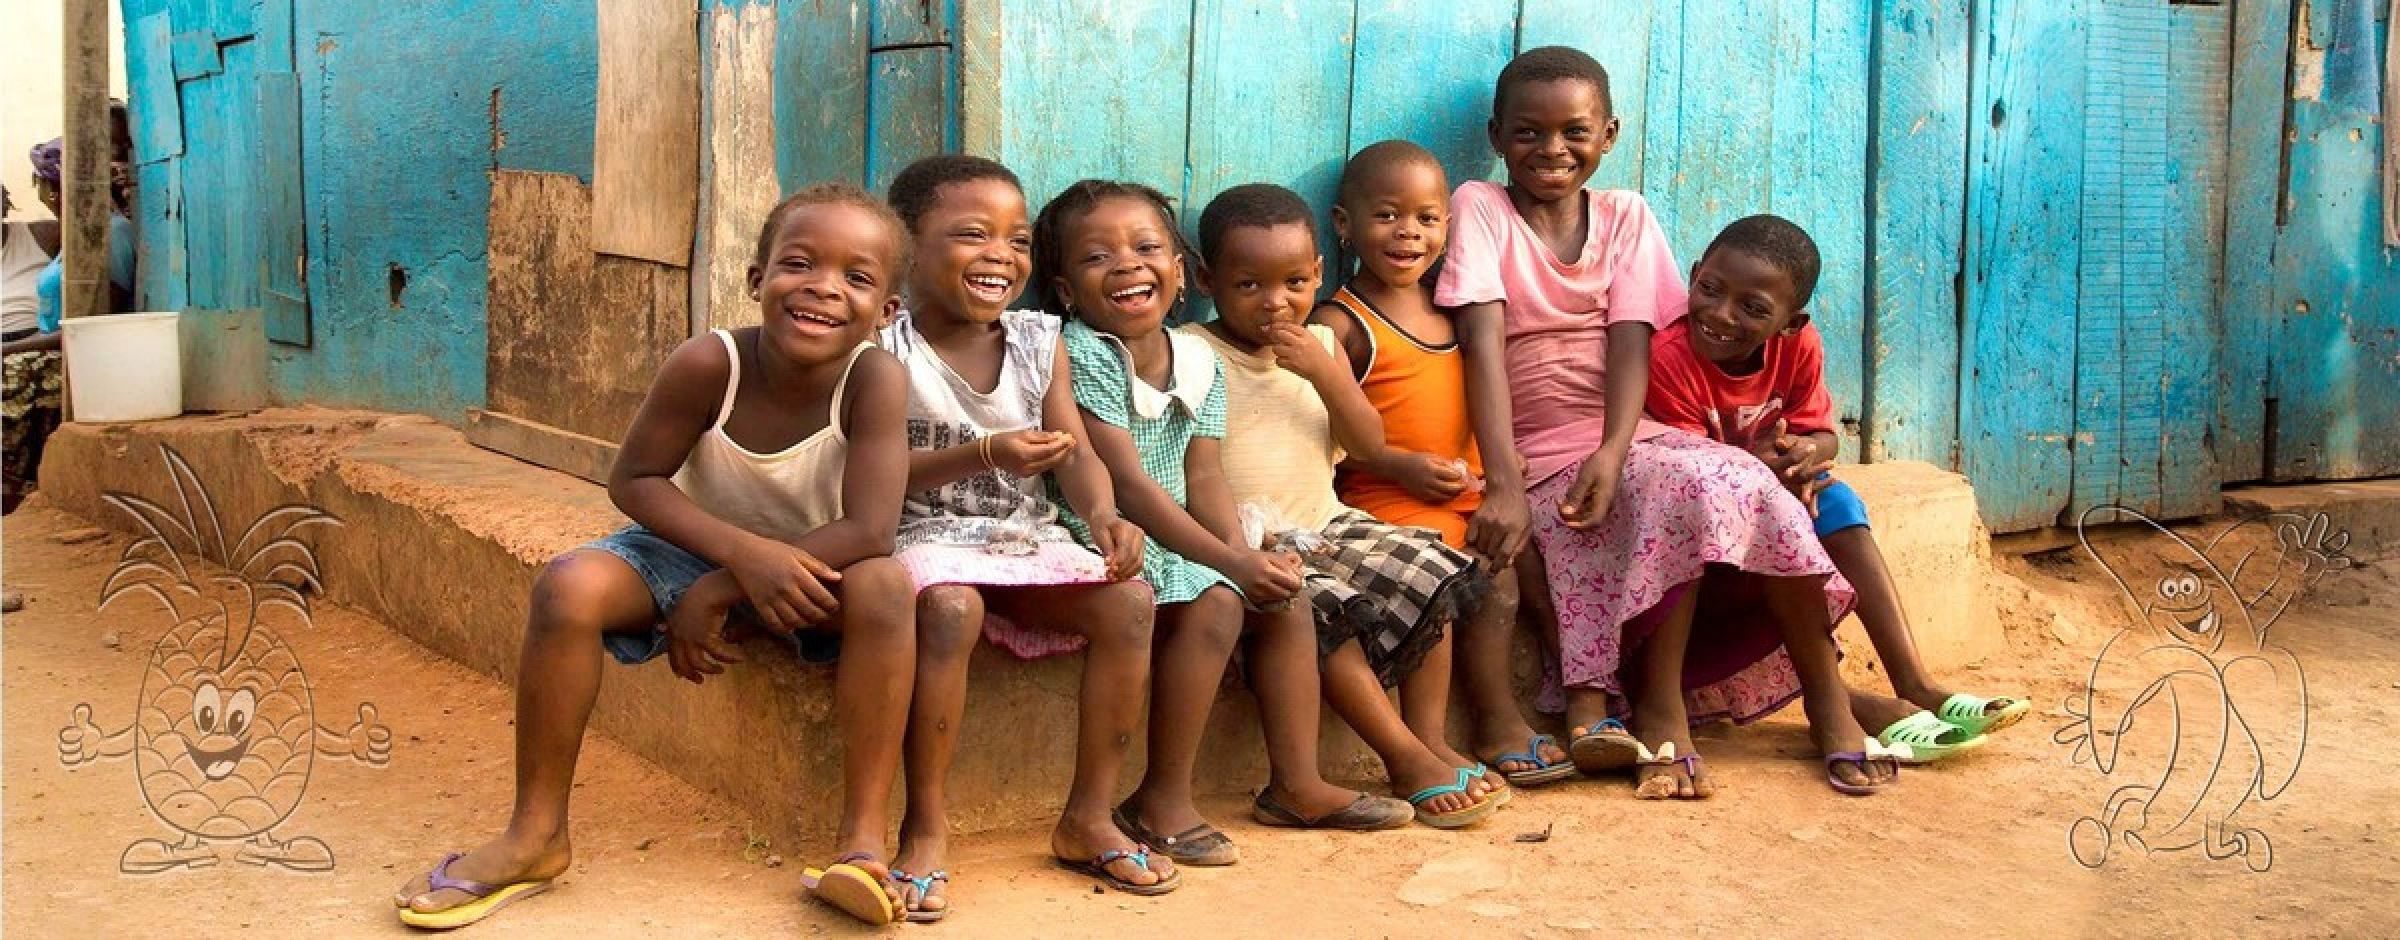 Children of Ghana